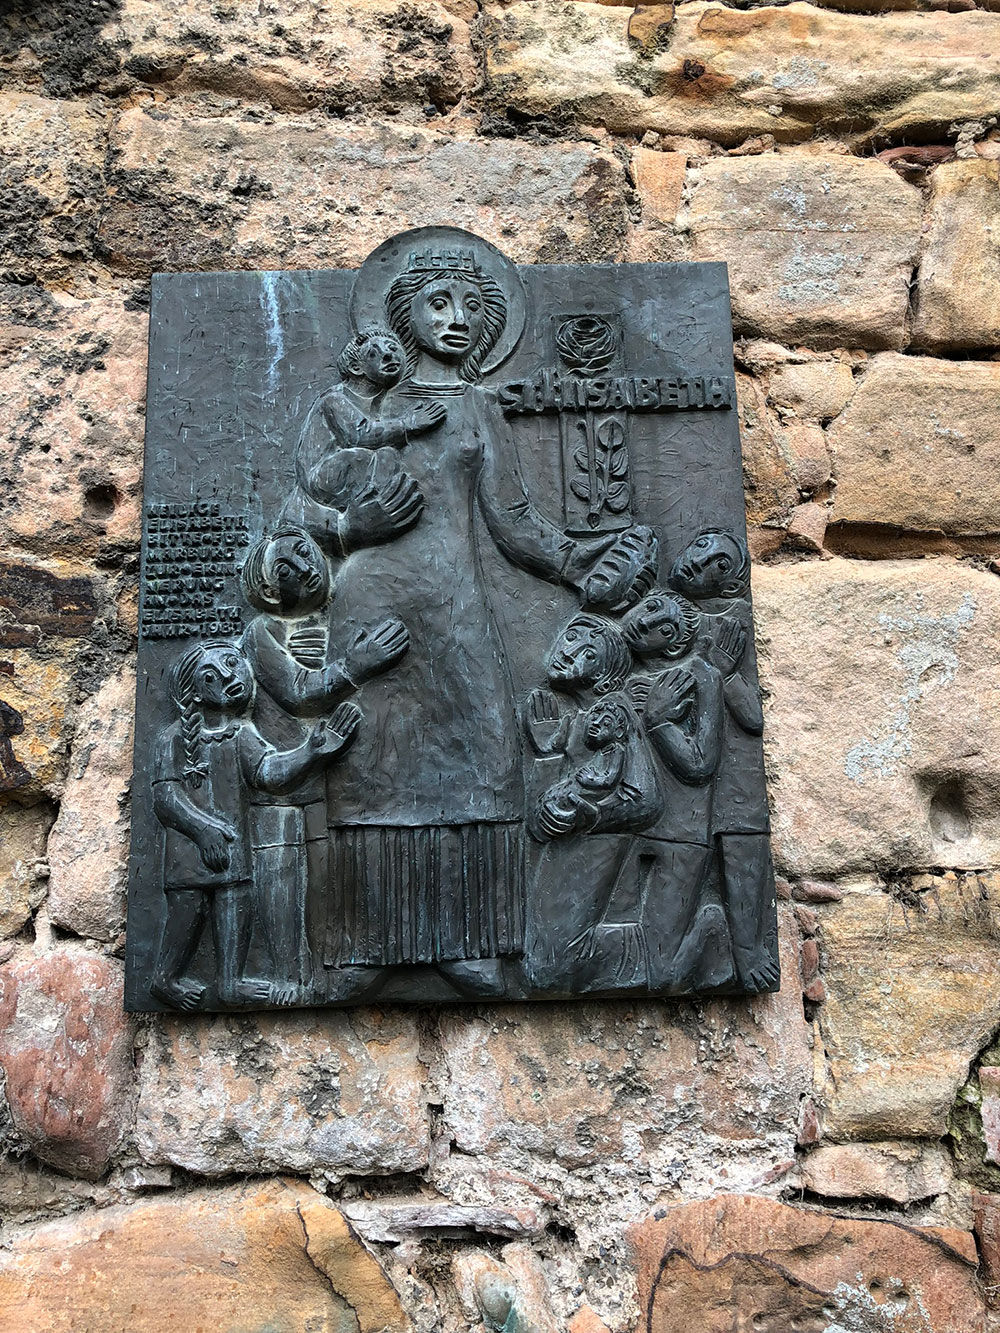 Bronzetafel für die heilige Elisabeth an einer Mauer